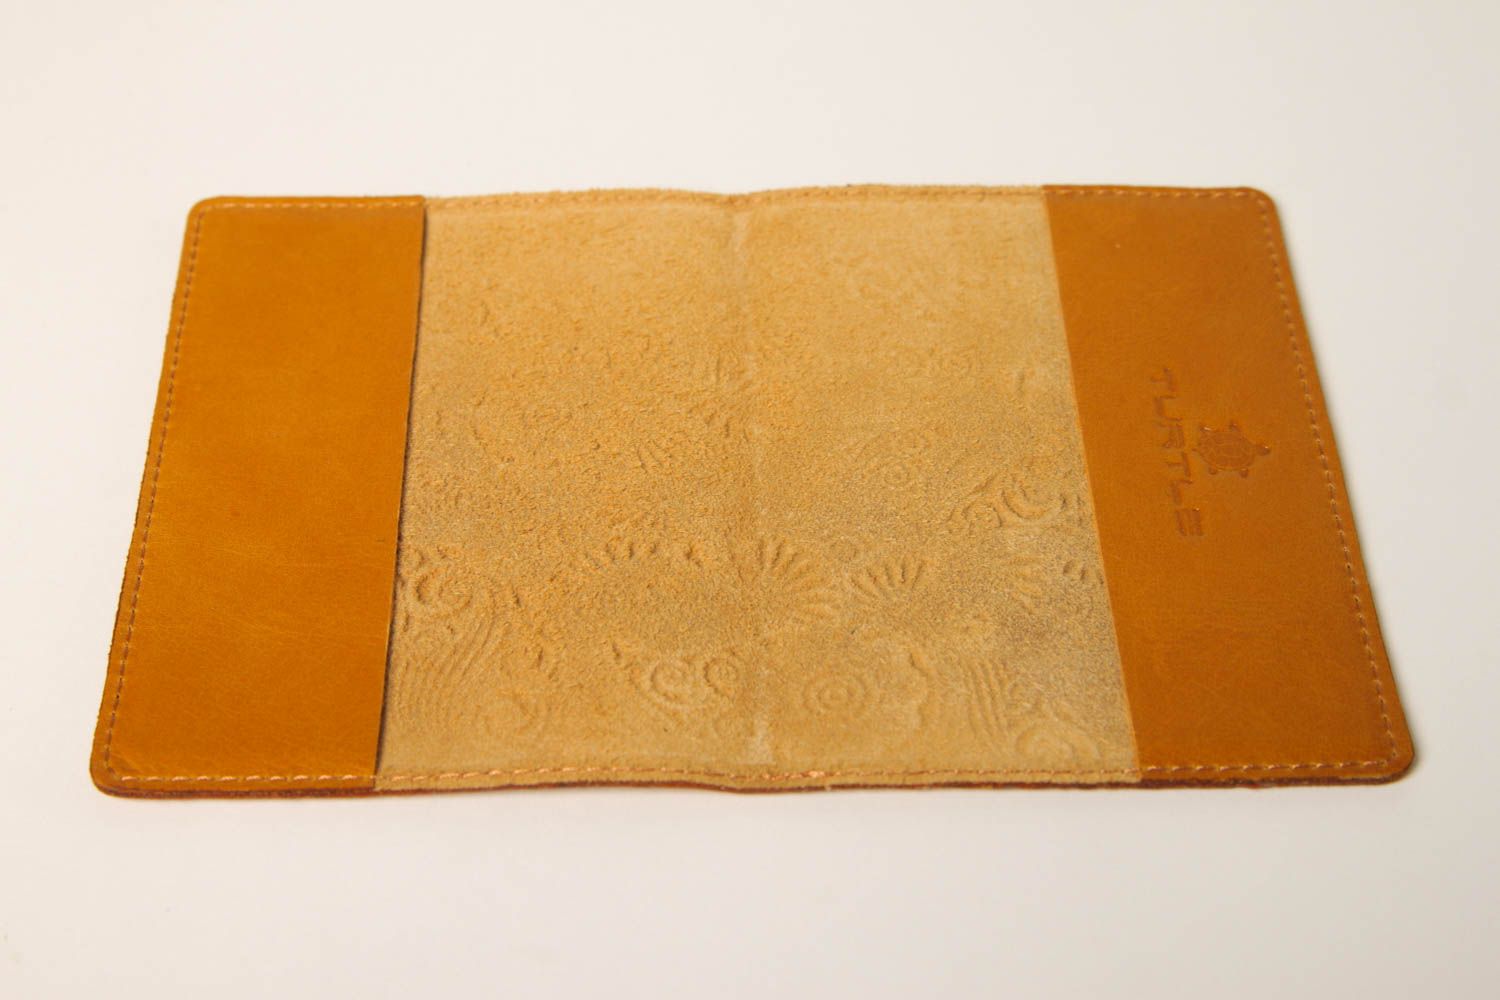 Аксессуар из кожи handmade оригинальный подарок с орнаментом обложка на паспорт фото 5